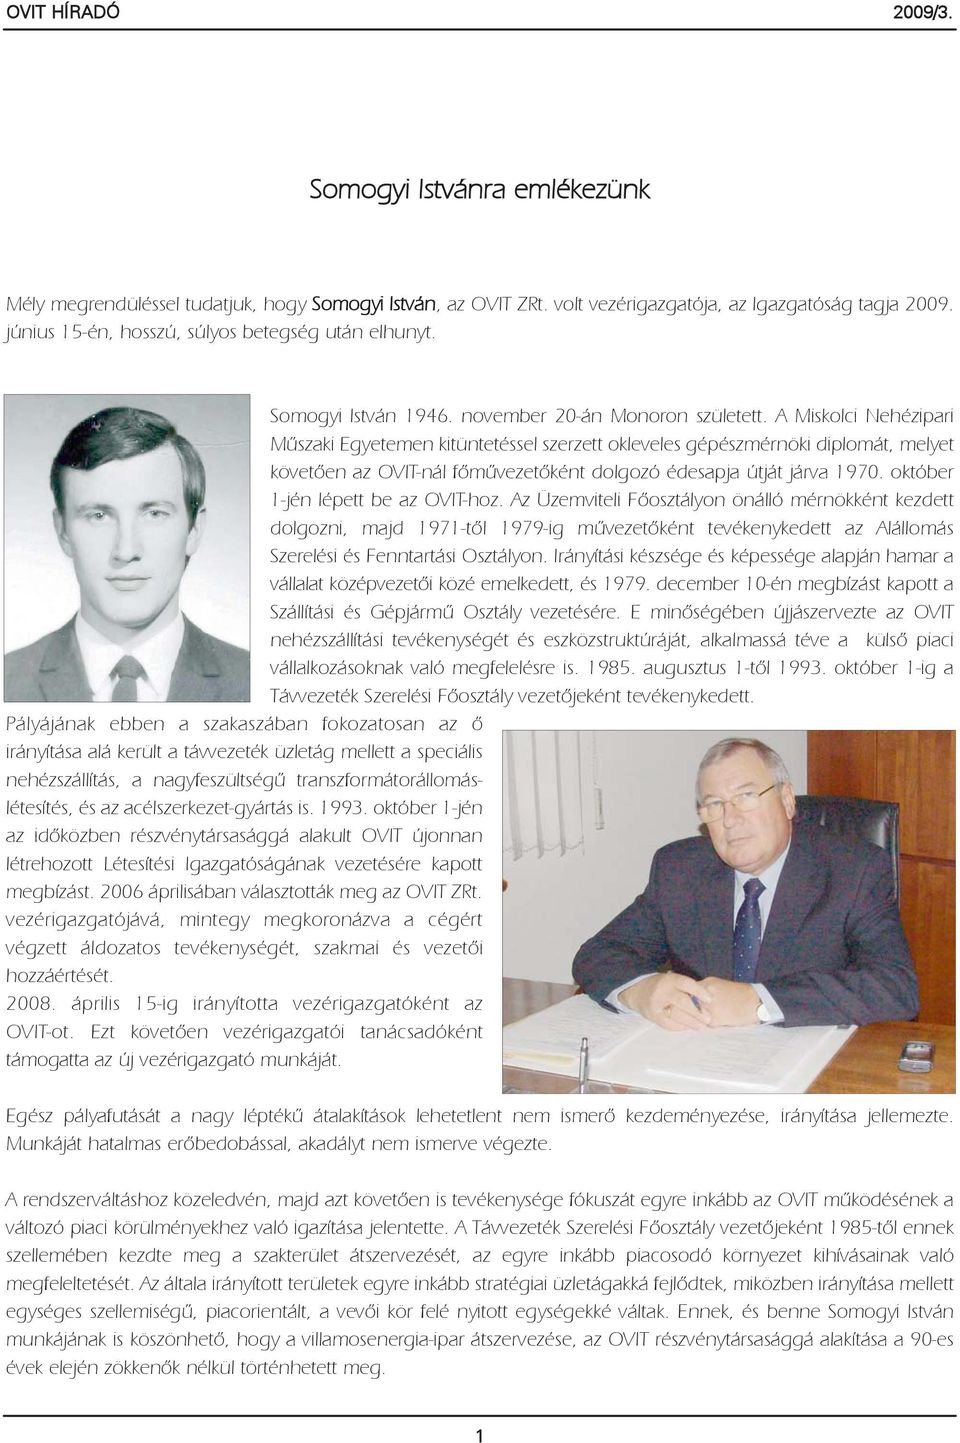 A Miskolci Nehézipari Mûszaki Egyetemen kitüntetéssel szerzett okleveles gépészmérnöki diplomát, melyet követõen az OVIT-nál fõmûvezetõként dolgozó édesapja útját járva 1970.